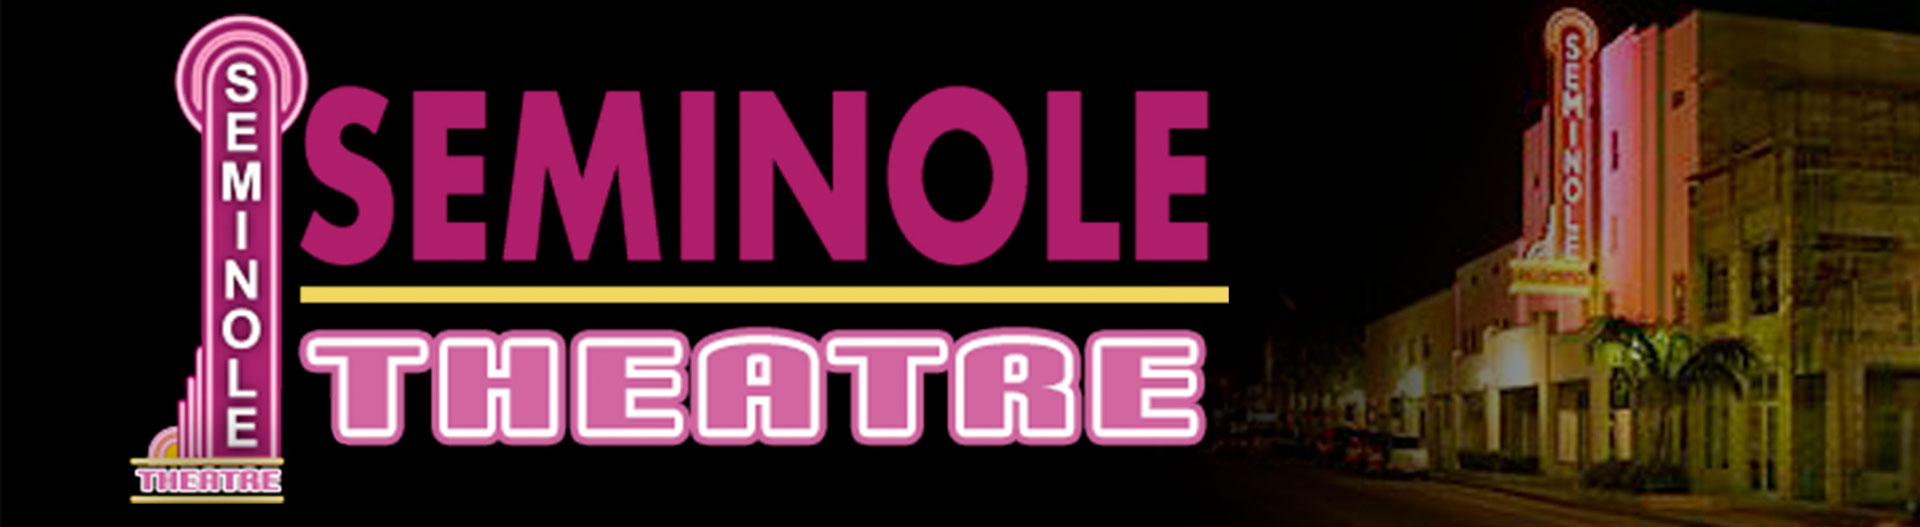 Seminole Theatre - Affiliate Banner